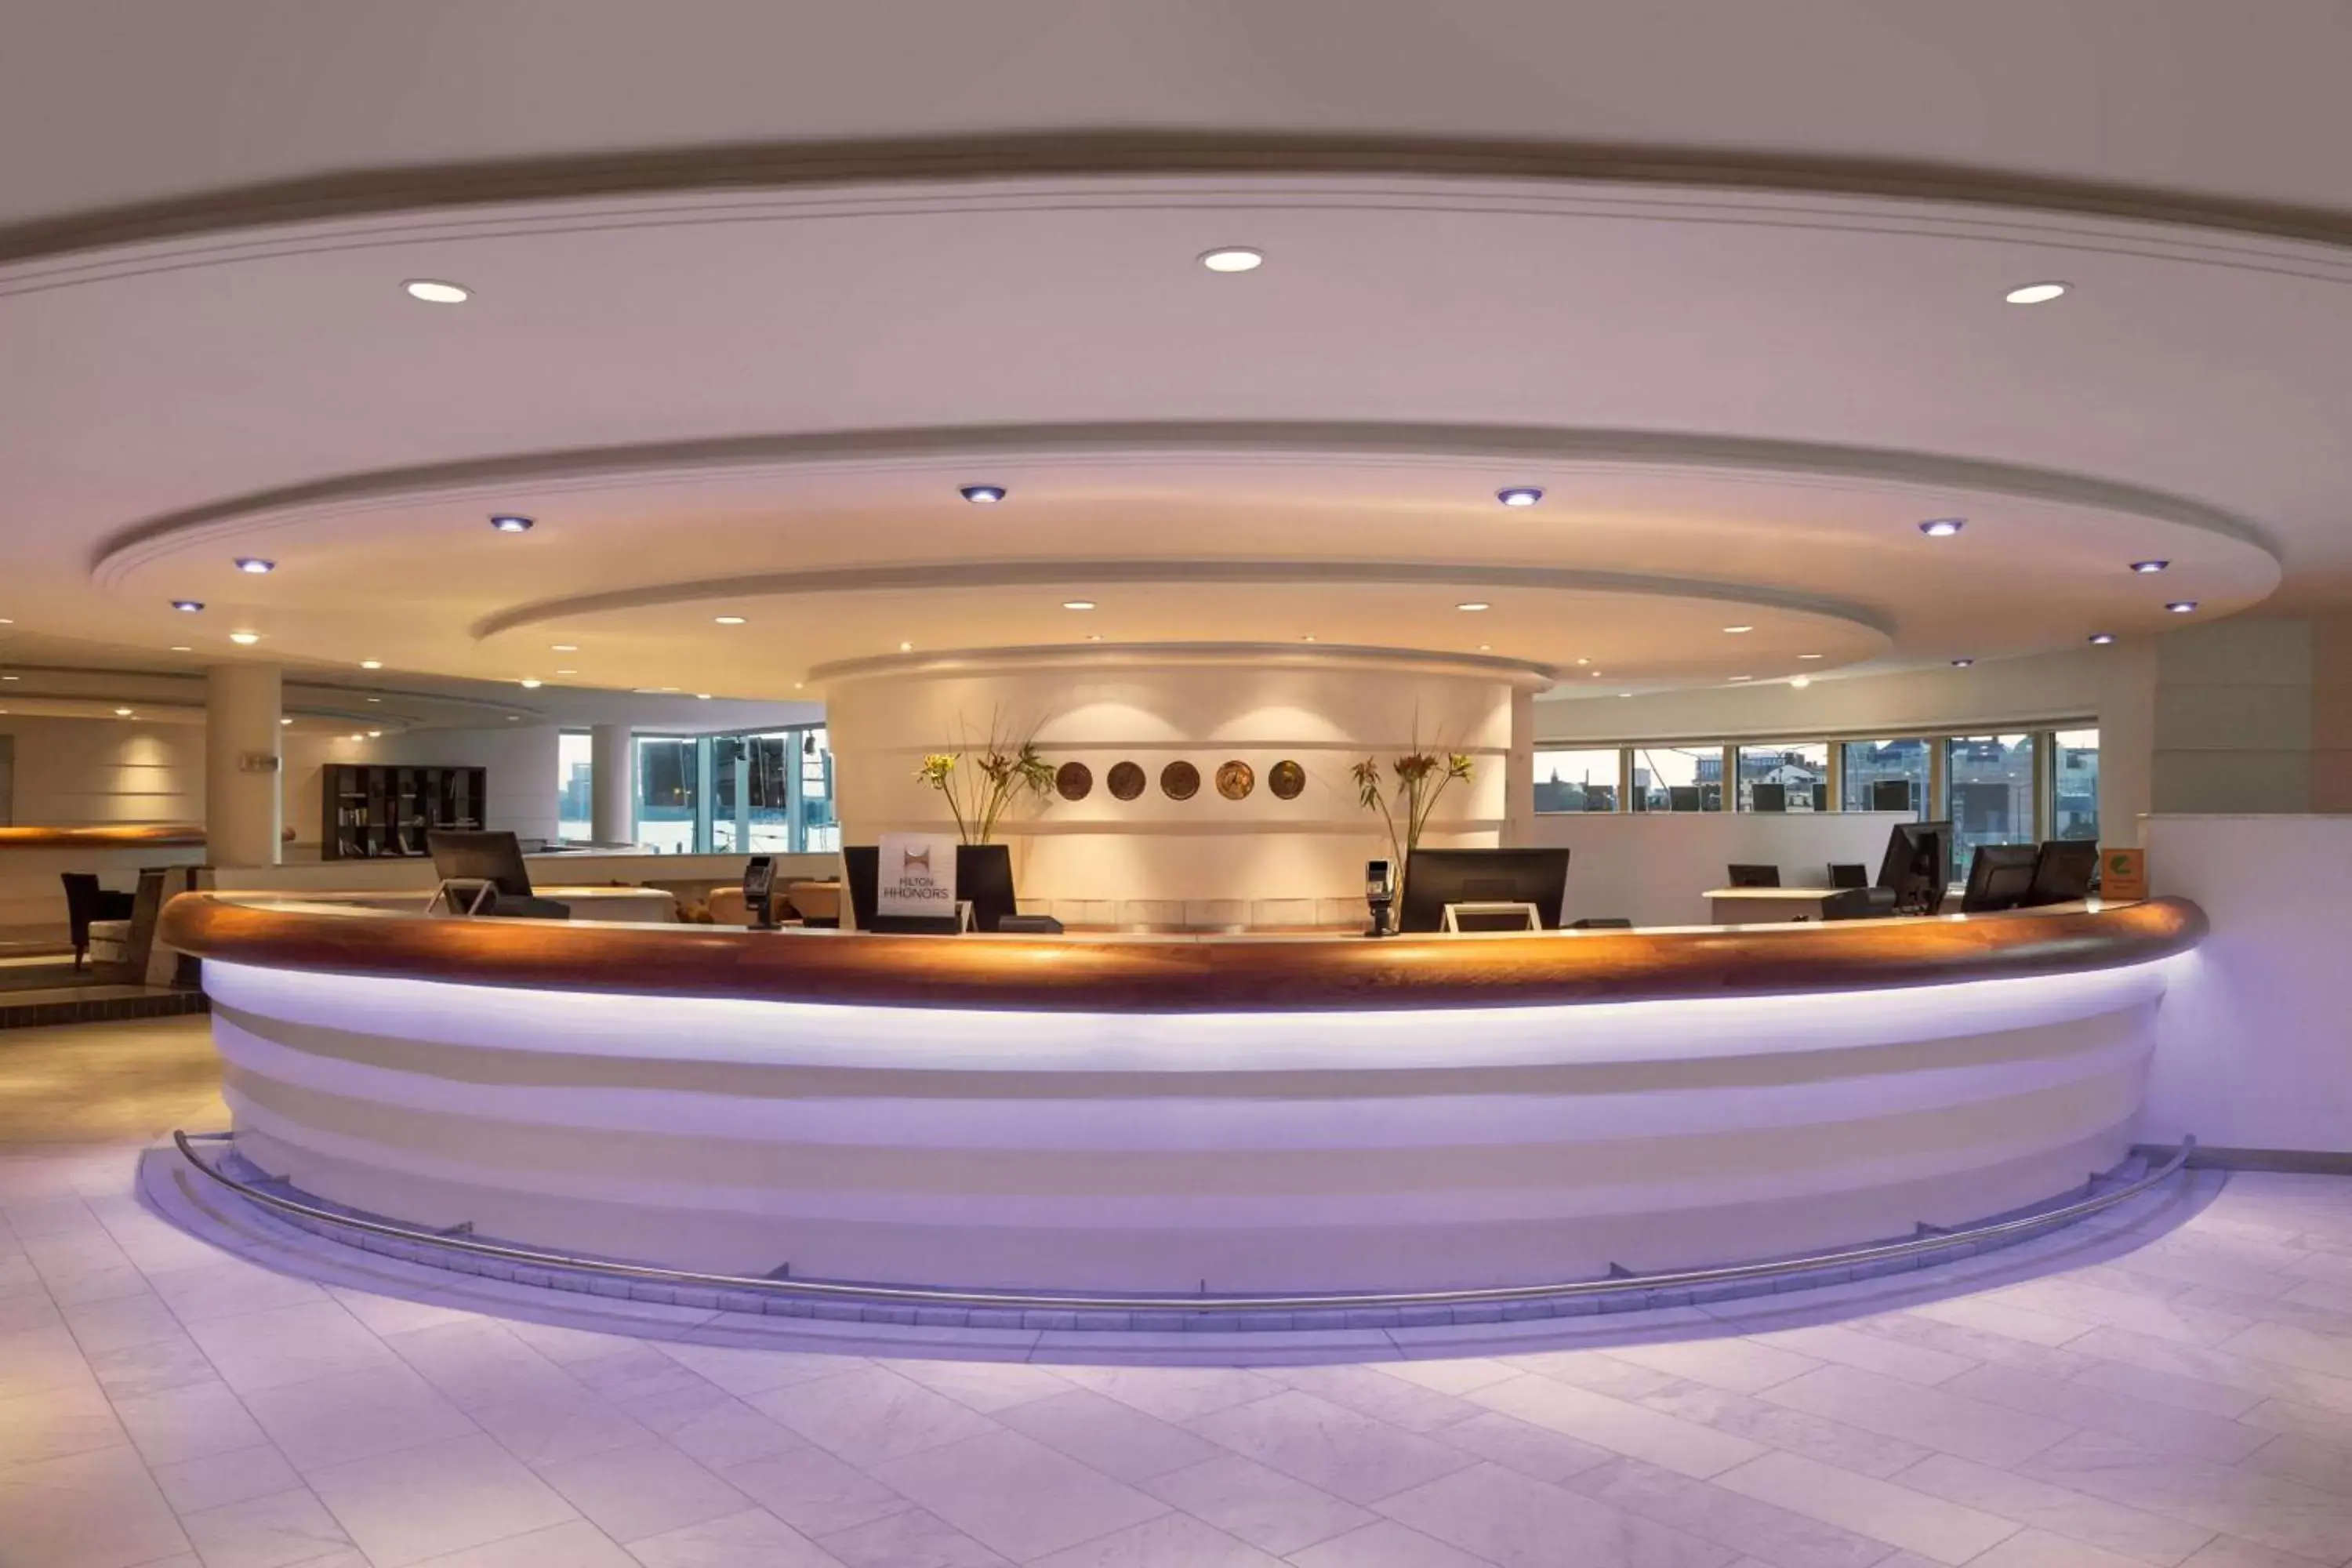 Lobby or reception, Lobby/Reception in Hilton Stockholm Slussen Hotel